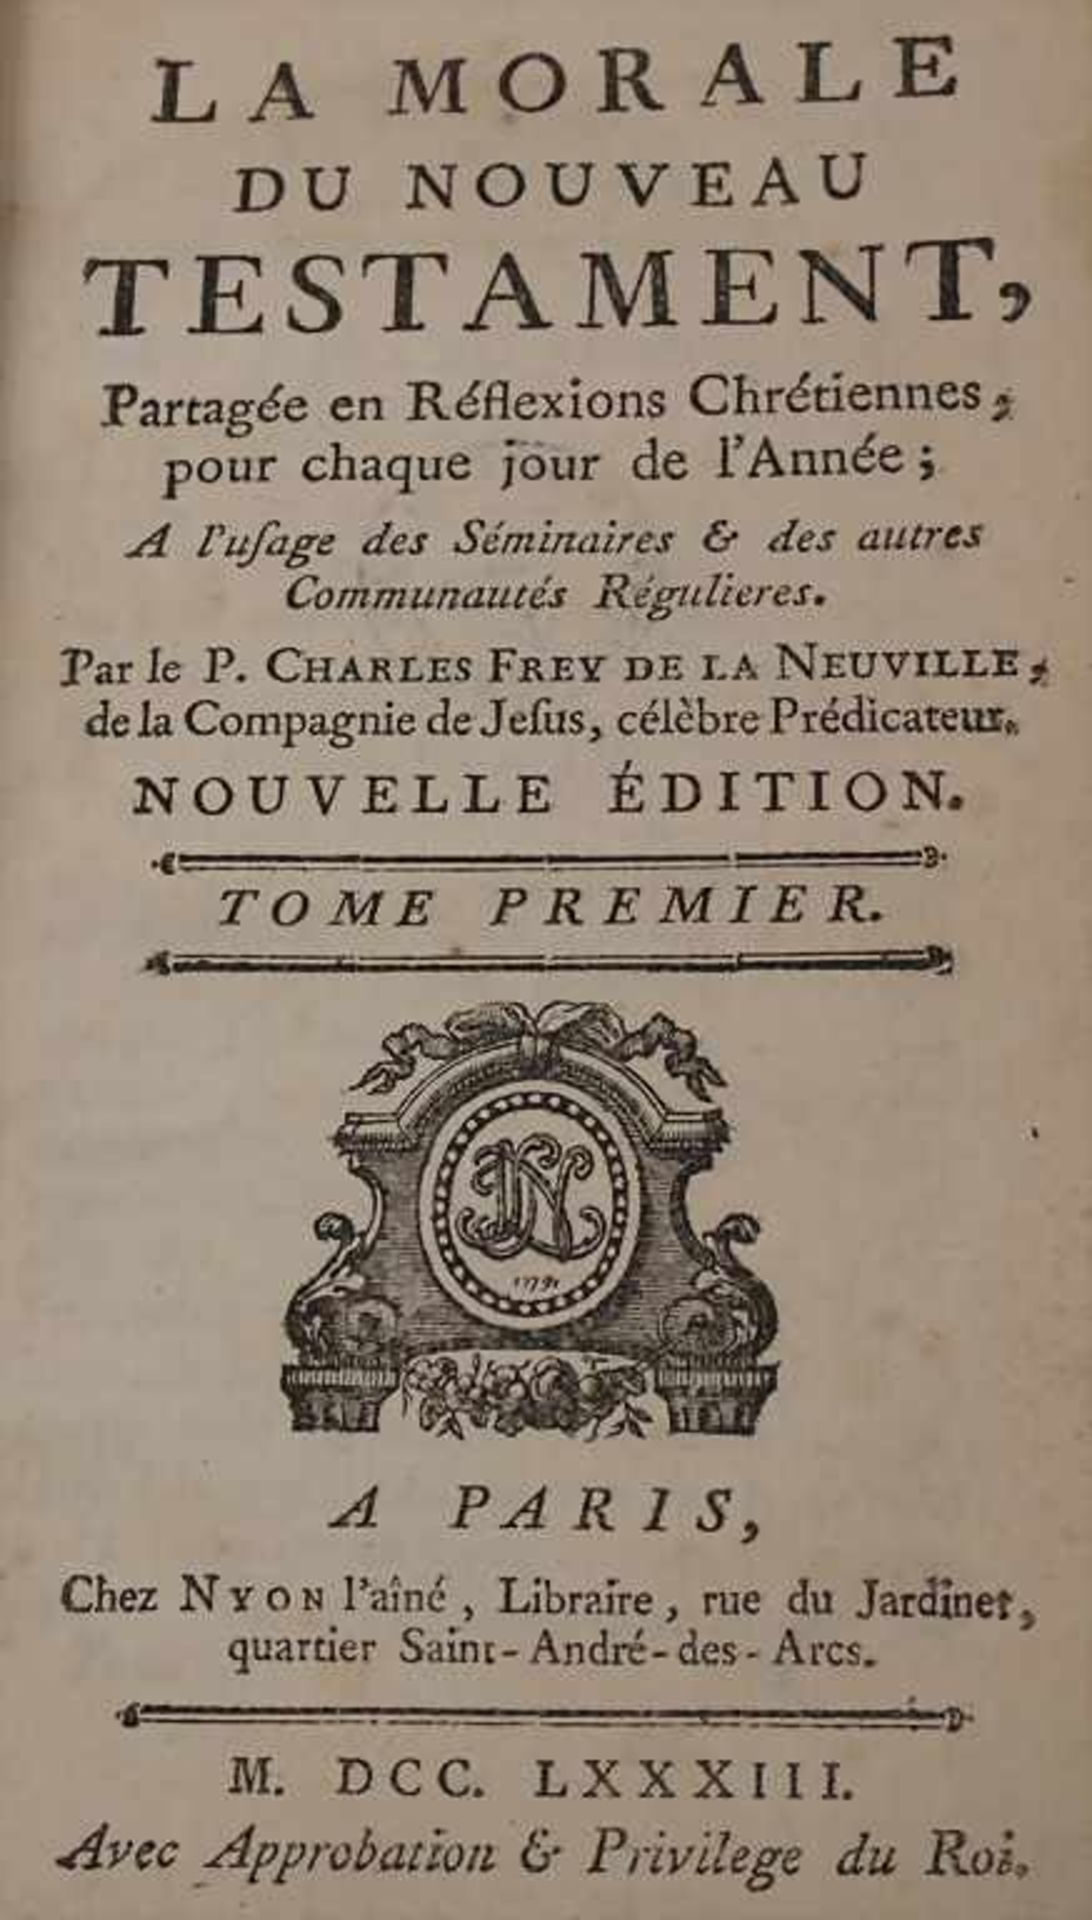 Frey de la Neuville, Charles: La moral de Nouveau TéstamentTitel: La moral de Nouveau Téstament, - Image 2 of 2